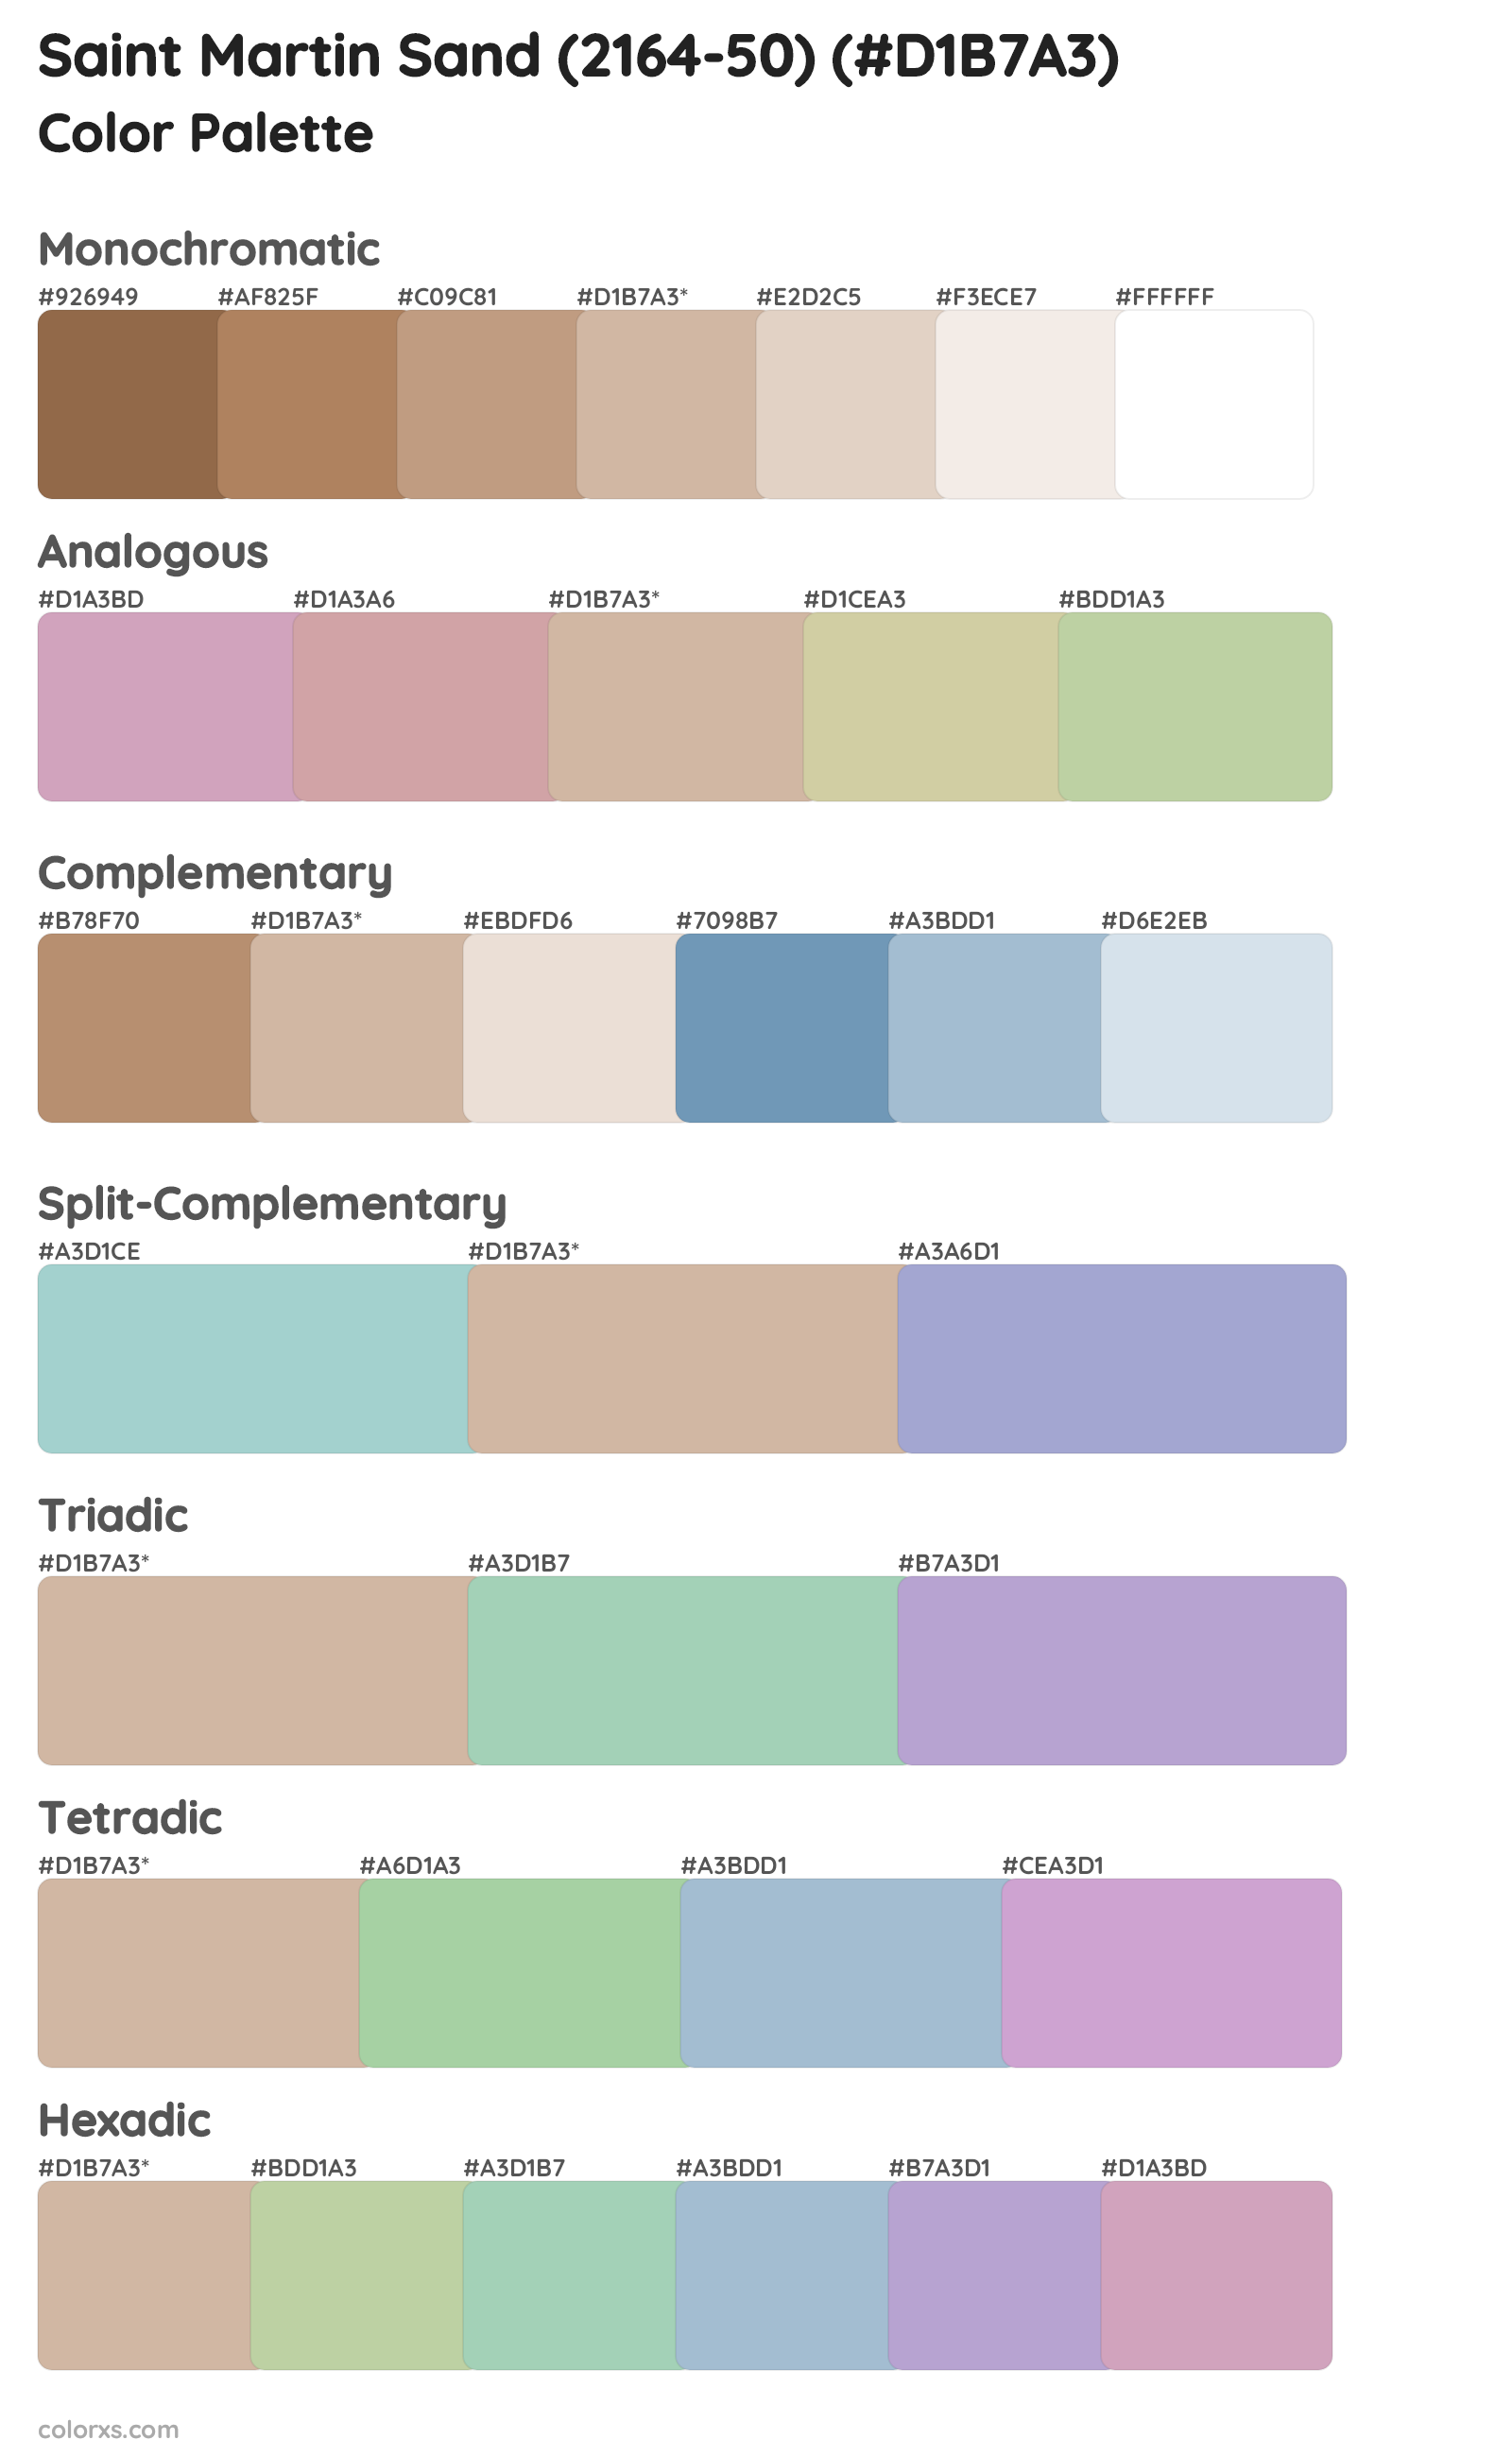 Saint Martin Sand (2164-50) Color Scheme Palettes